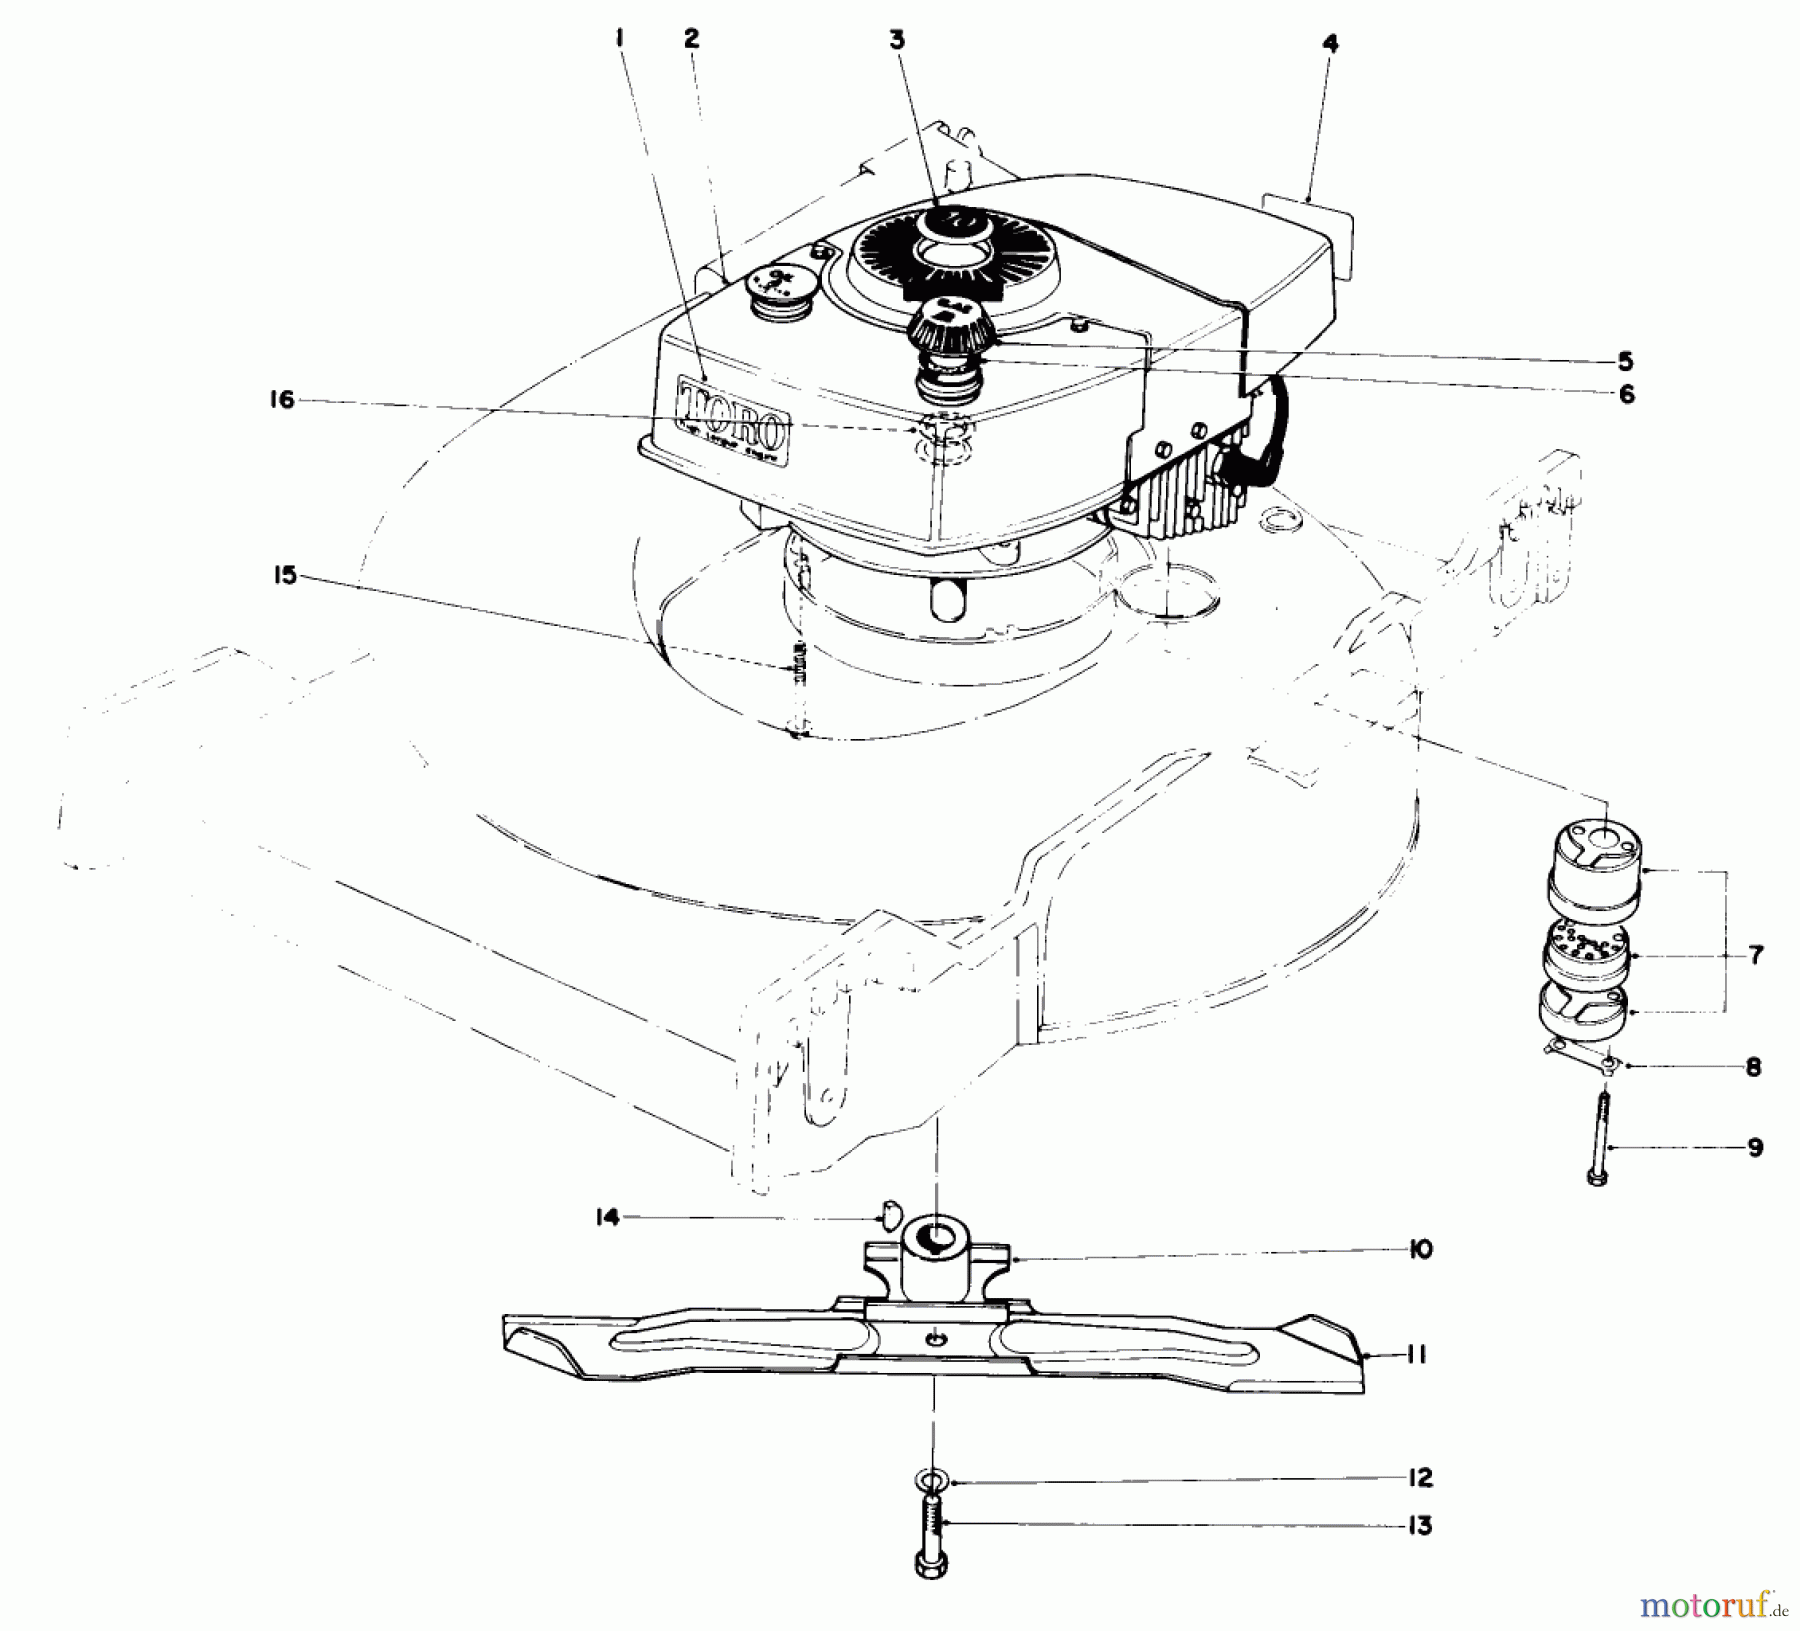  Toro Neu Mowers, Walk-Behind Seite 1 20407 - Toro Lawnmower, 1977 (7000001-7999999) ENGINE ASSEMBLY